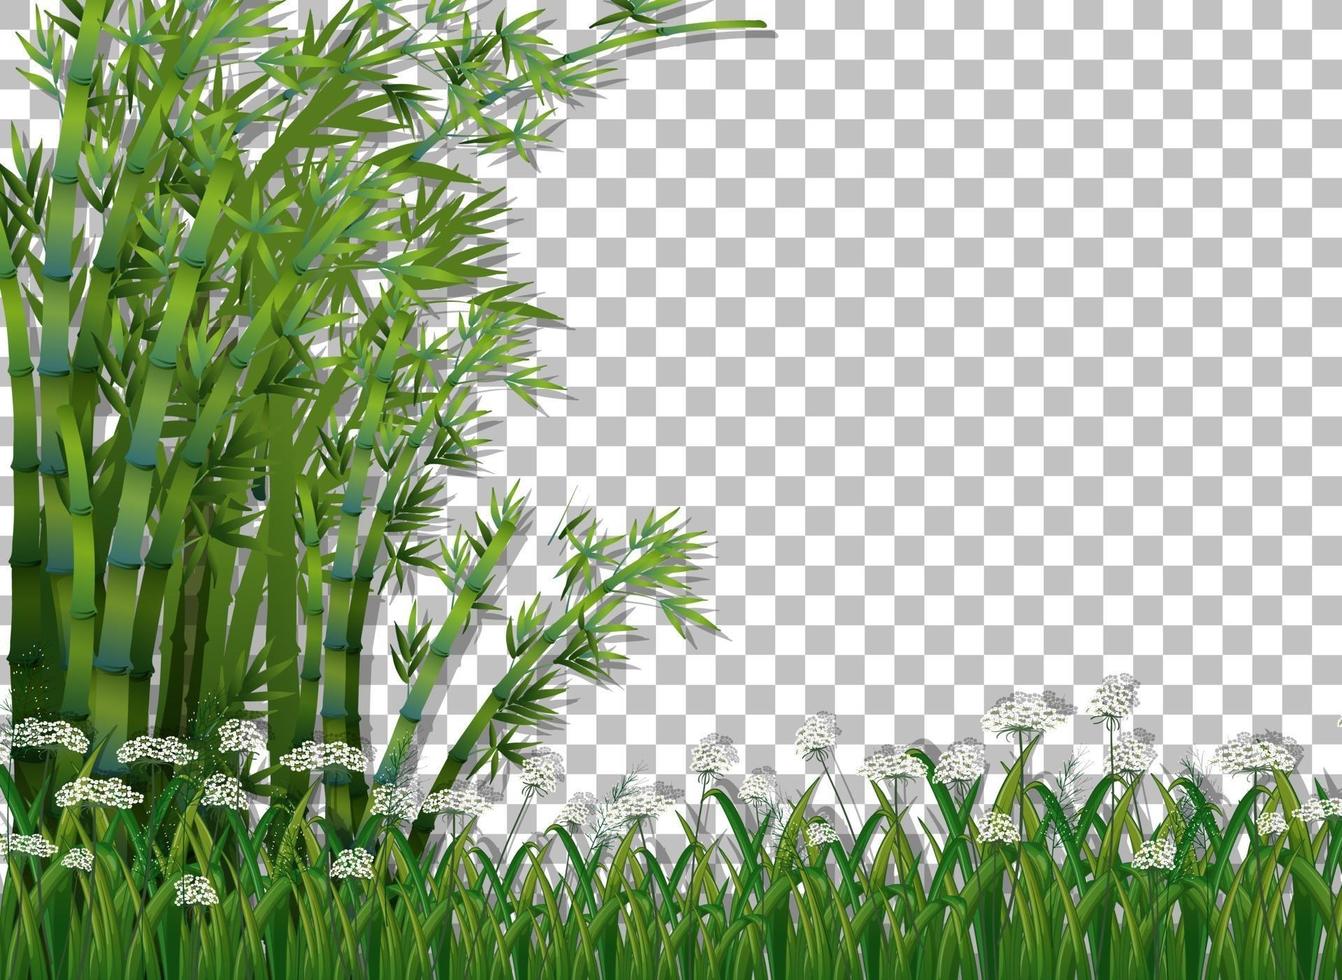 bambuträd och gräs vektor